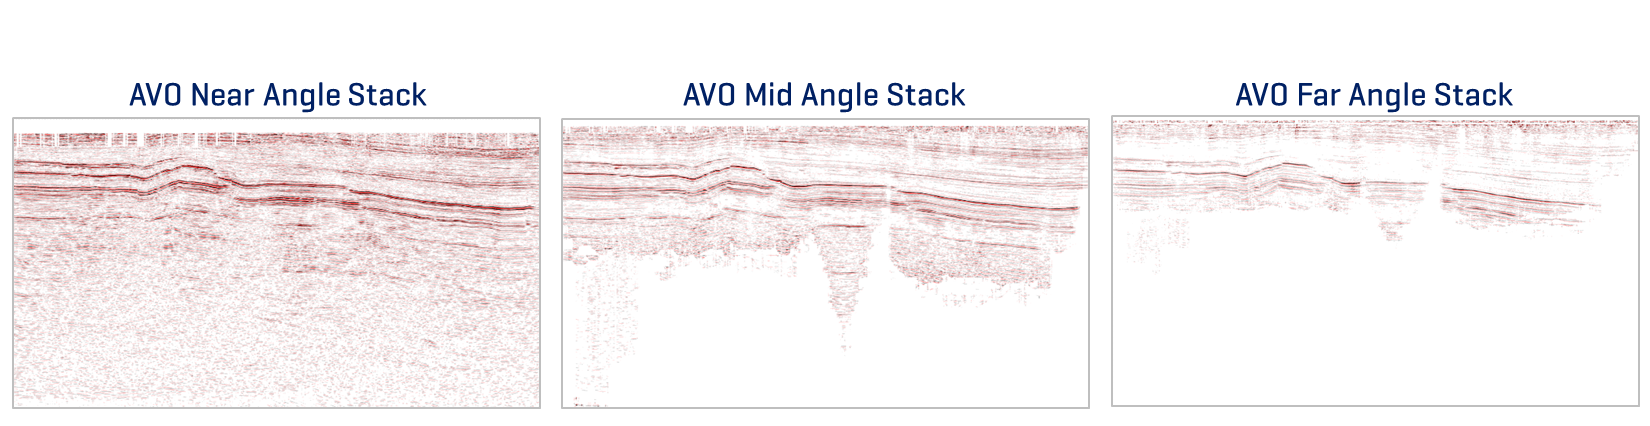 PT AVO Angle Stacks